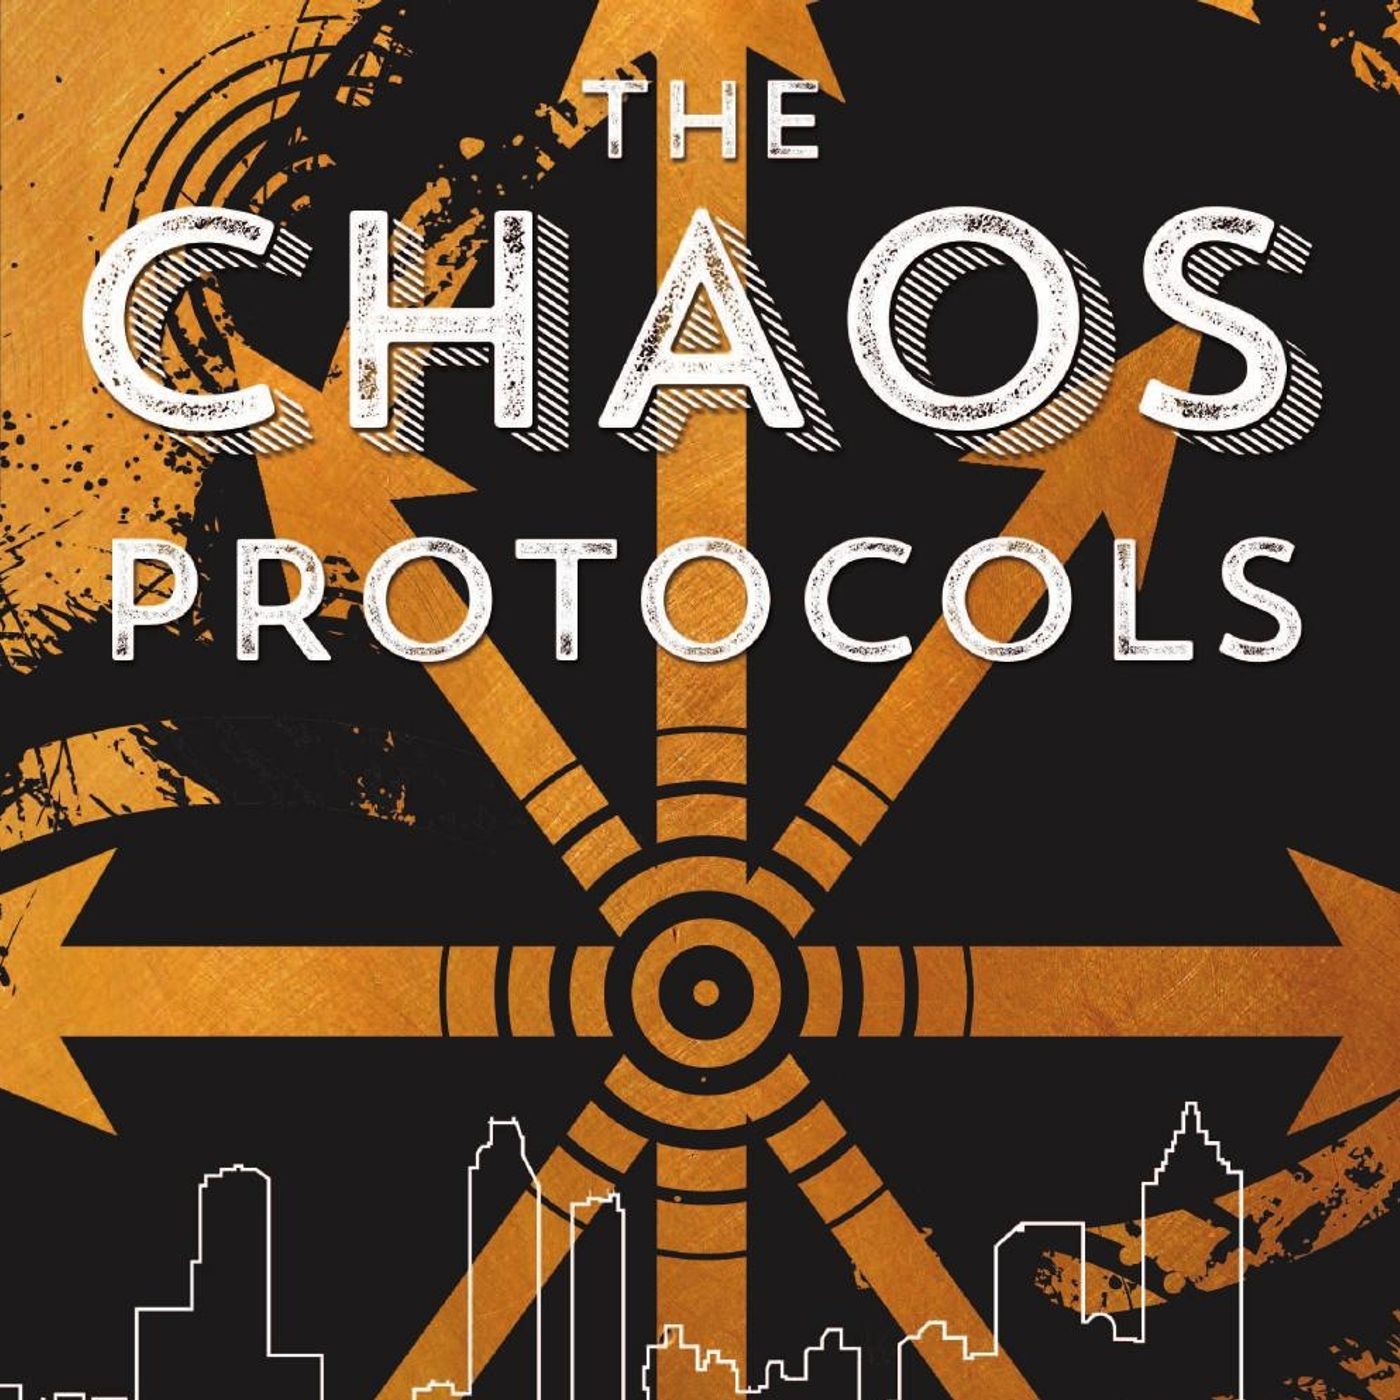 Podcast 169 - Gordon White & The Chaos Protocols